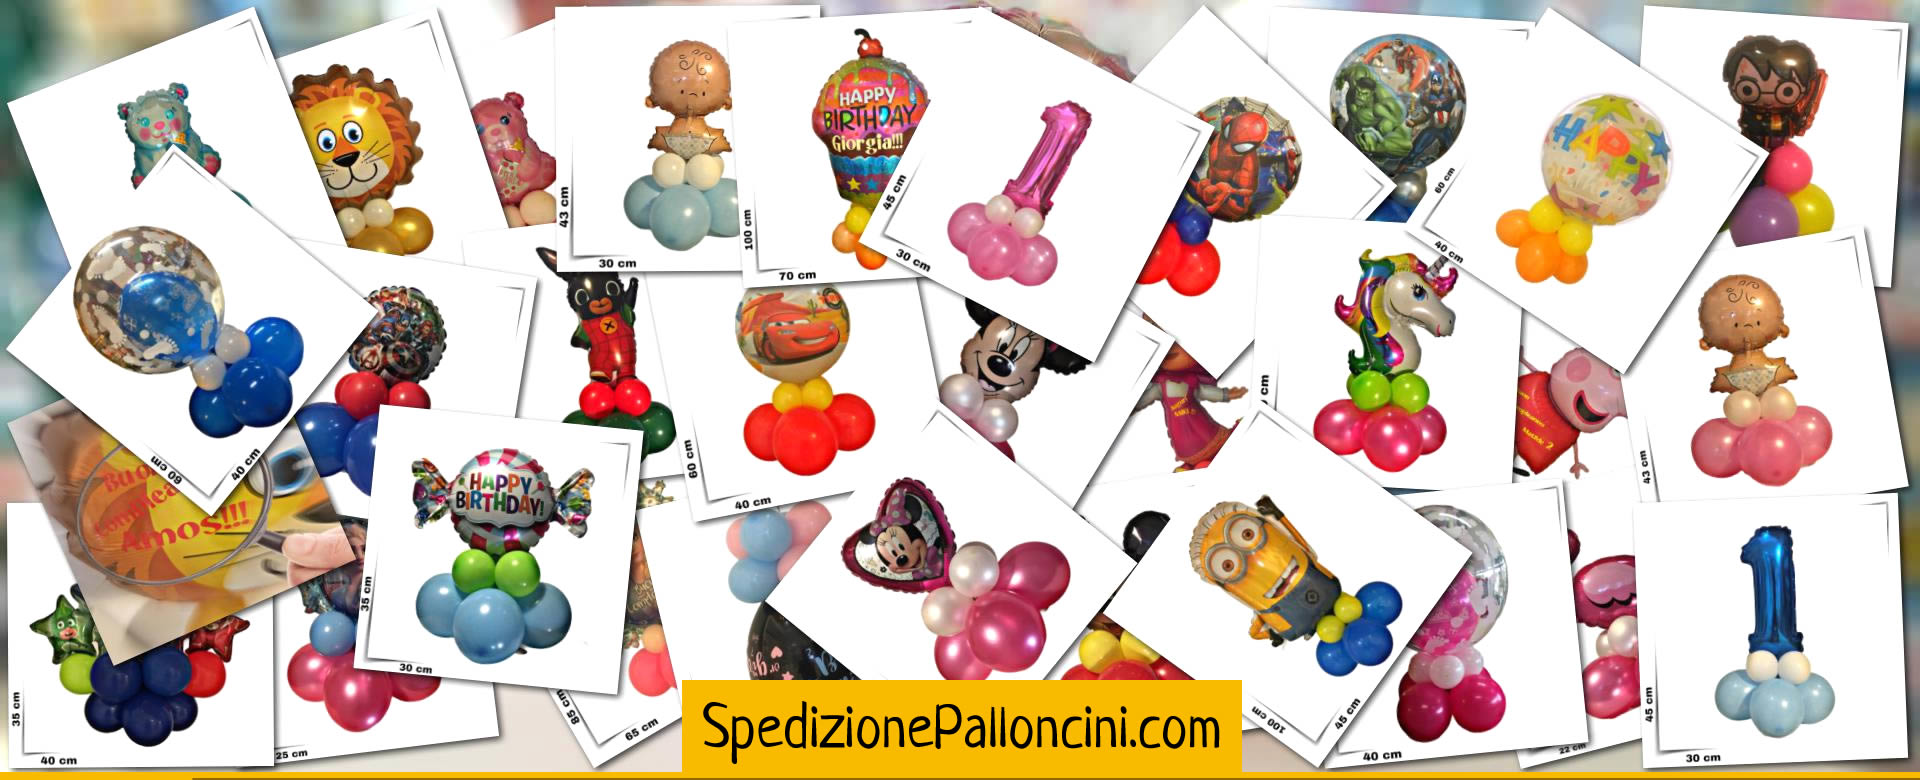 SpedizionePalloncini.com